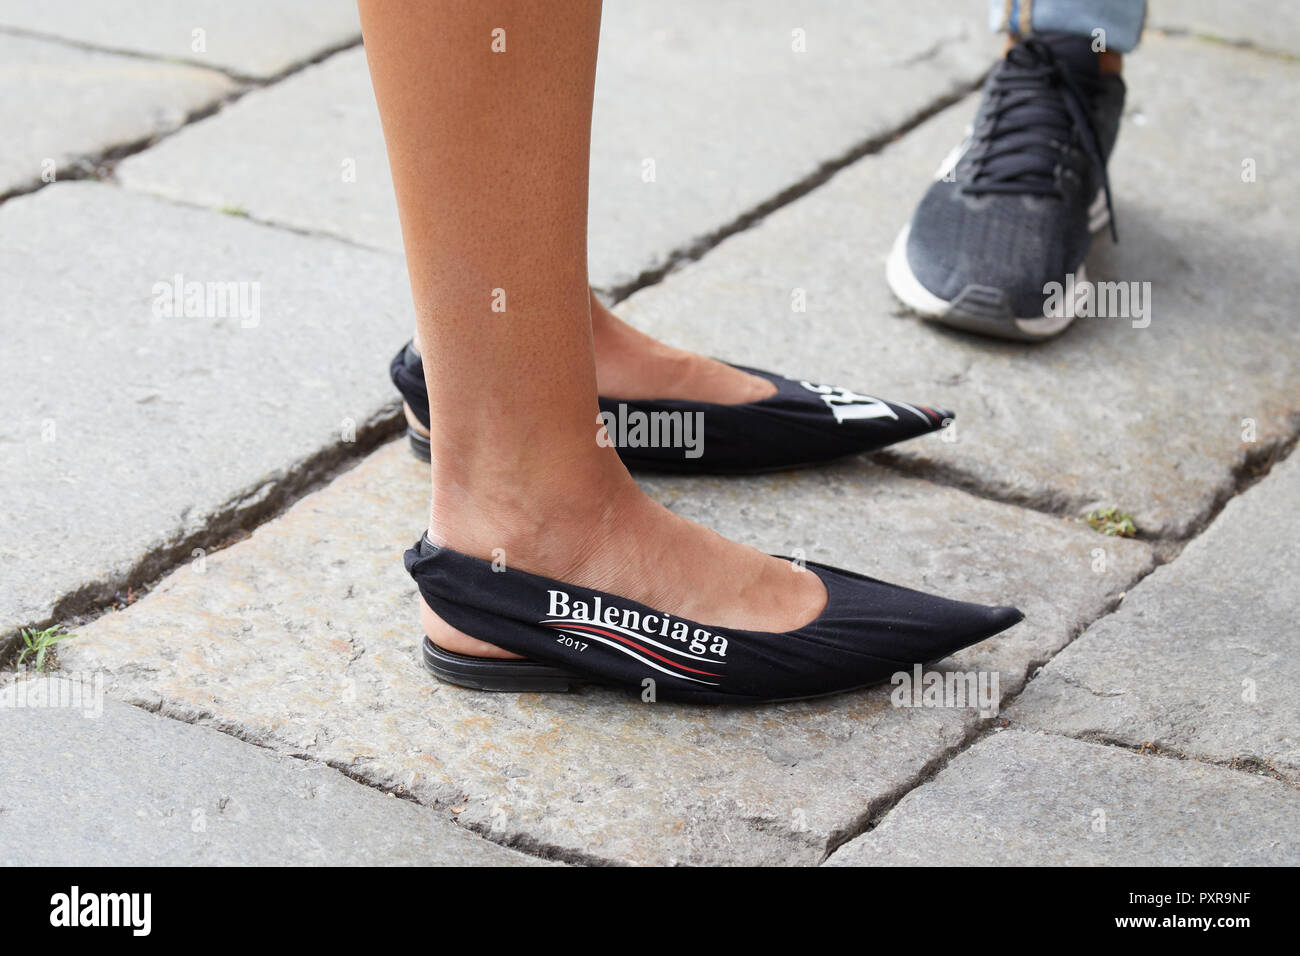 sugerir eco Para buscar refugio Milán, Italia - 22 de septiembre de 2018: Mujer con negro Balenciaga zapatos  de punta antes de la filosofía, el Fashion Show, la Semana de la moda de  Milán street style Fotografía